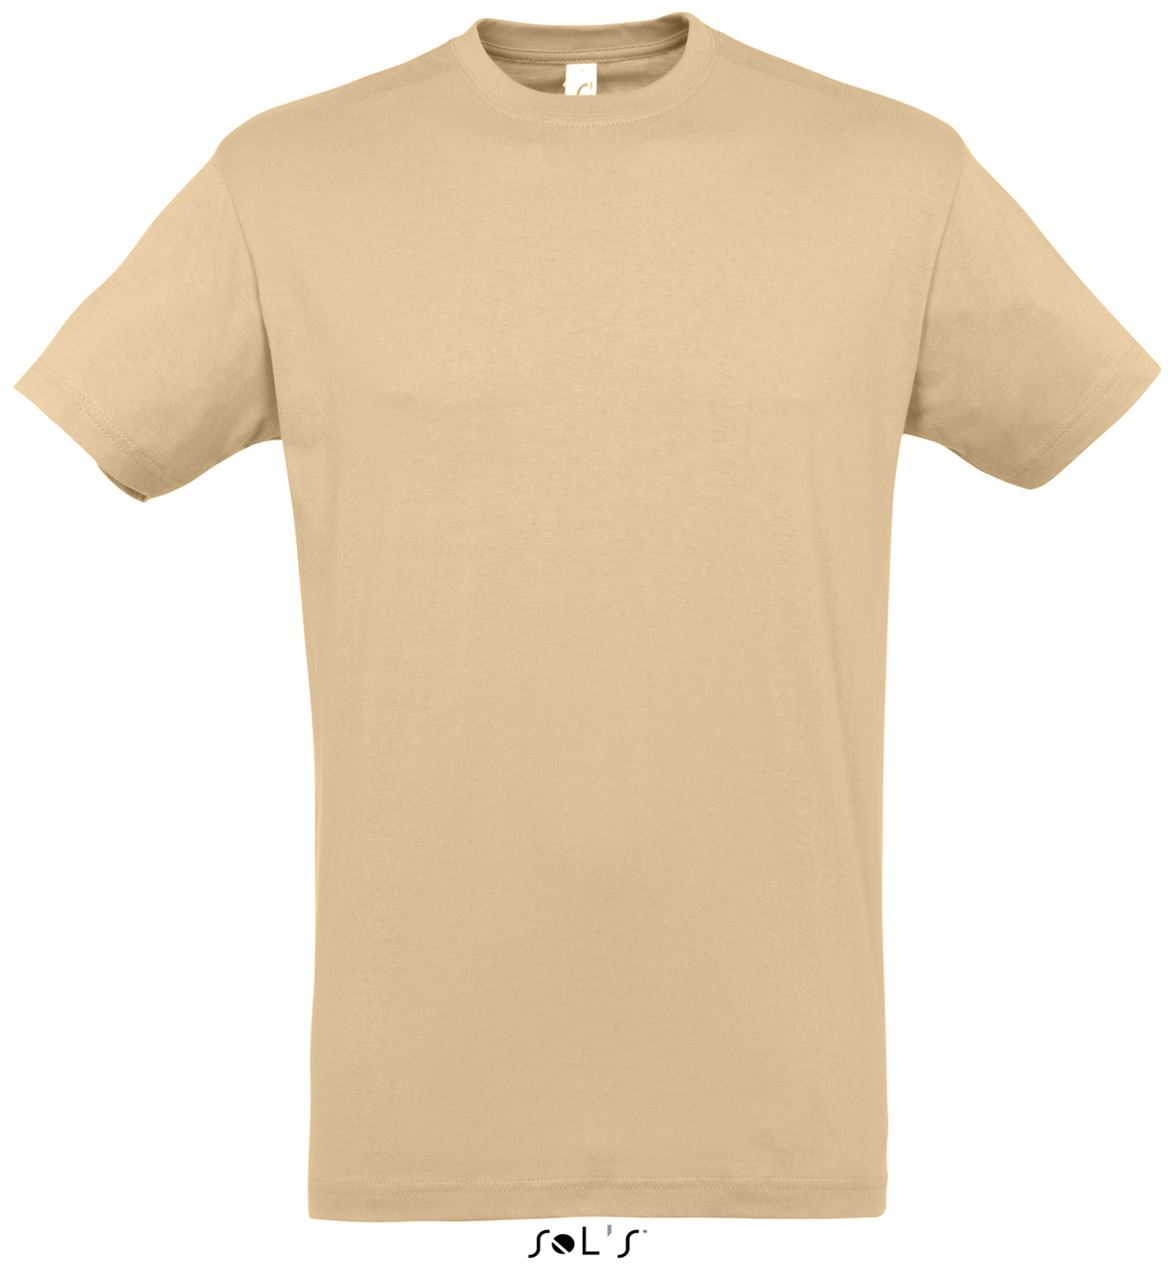 Sol's Regent - Unisex Round Collar T-shirt - Sol's Regent - Unisex Round Collar T-shirt - Sand